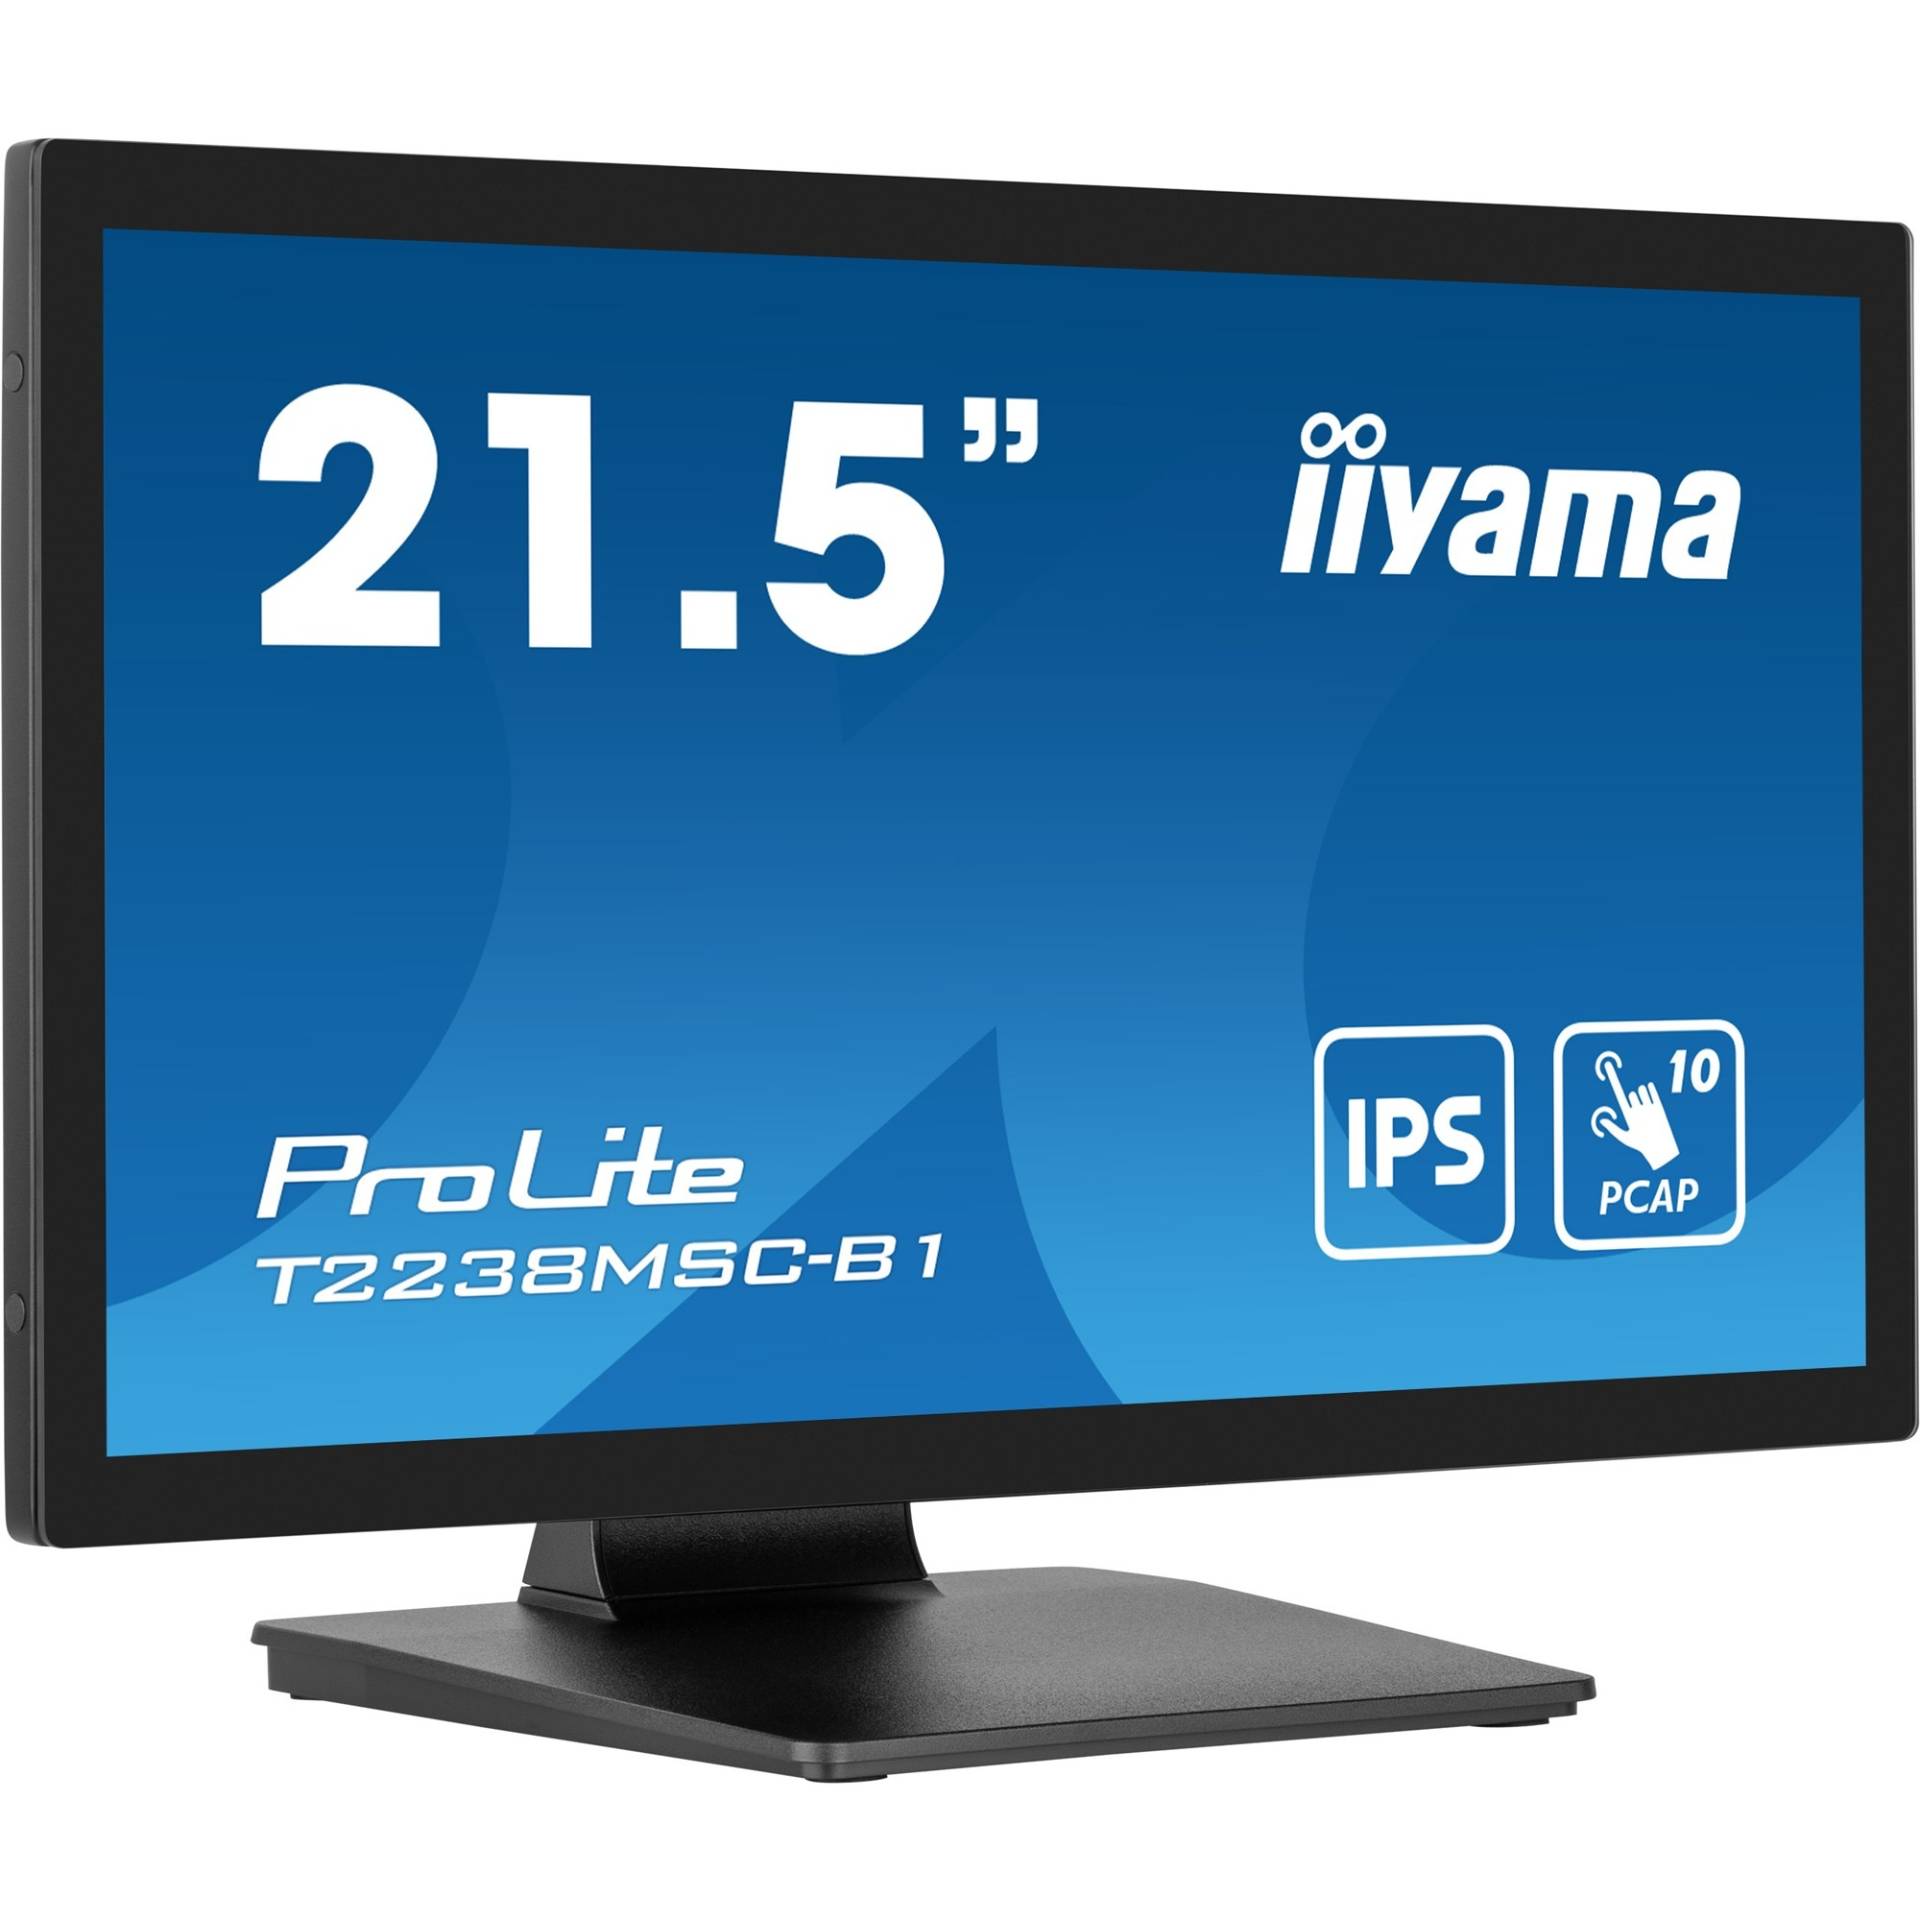 ProLite T2238MSC-B1, LED-Monitor von Iiyama